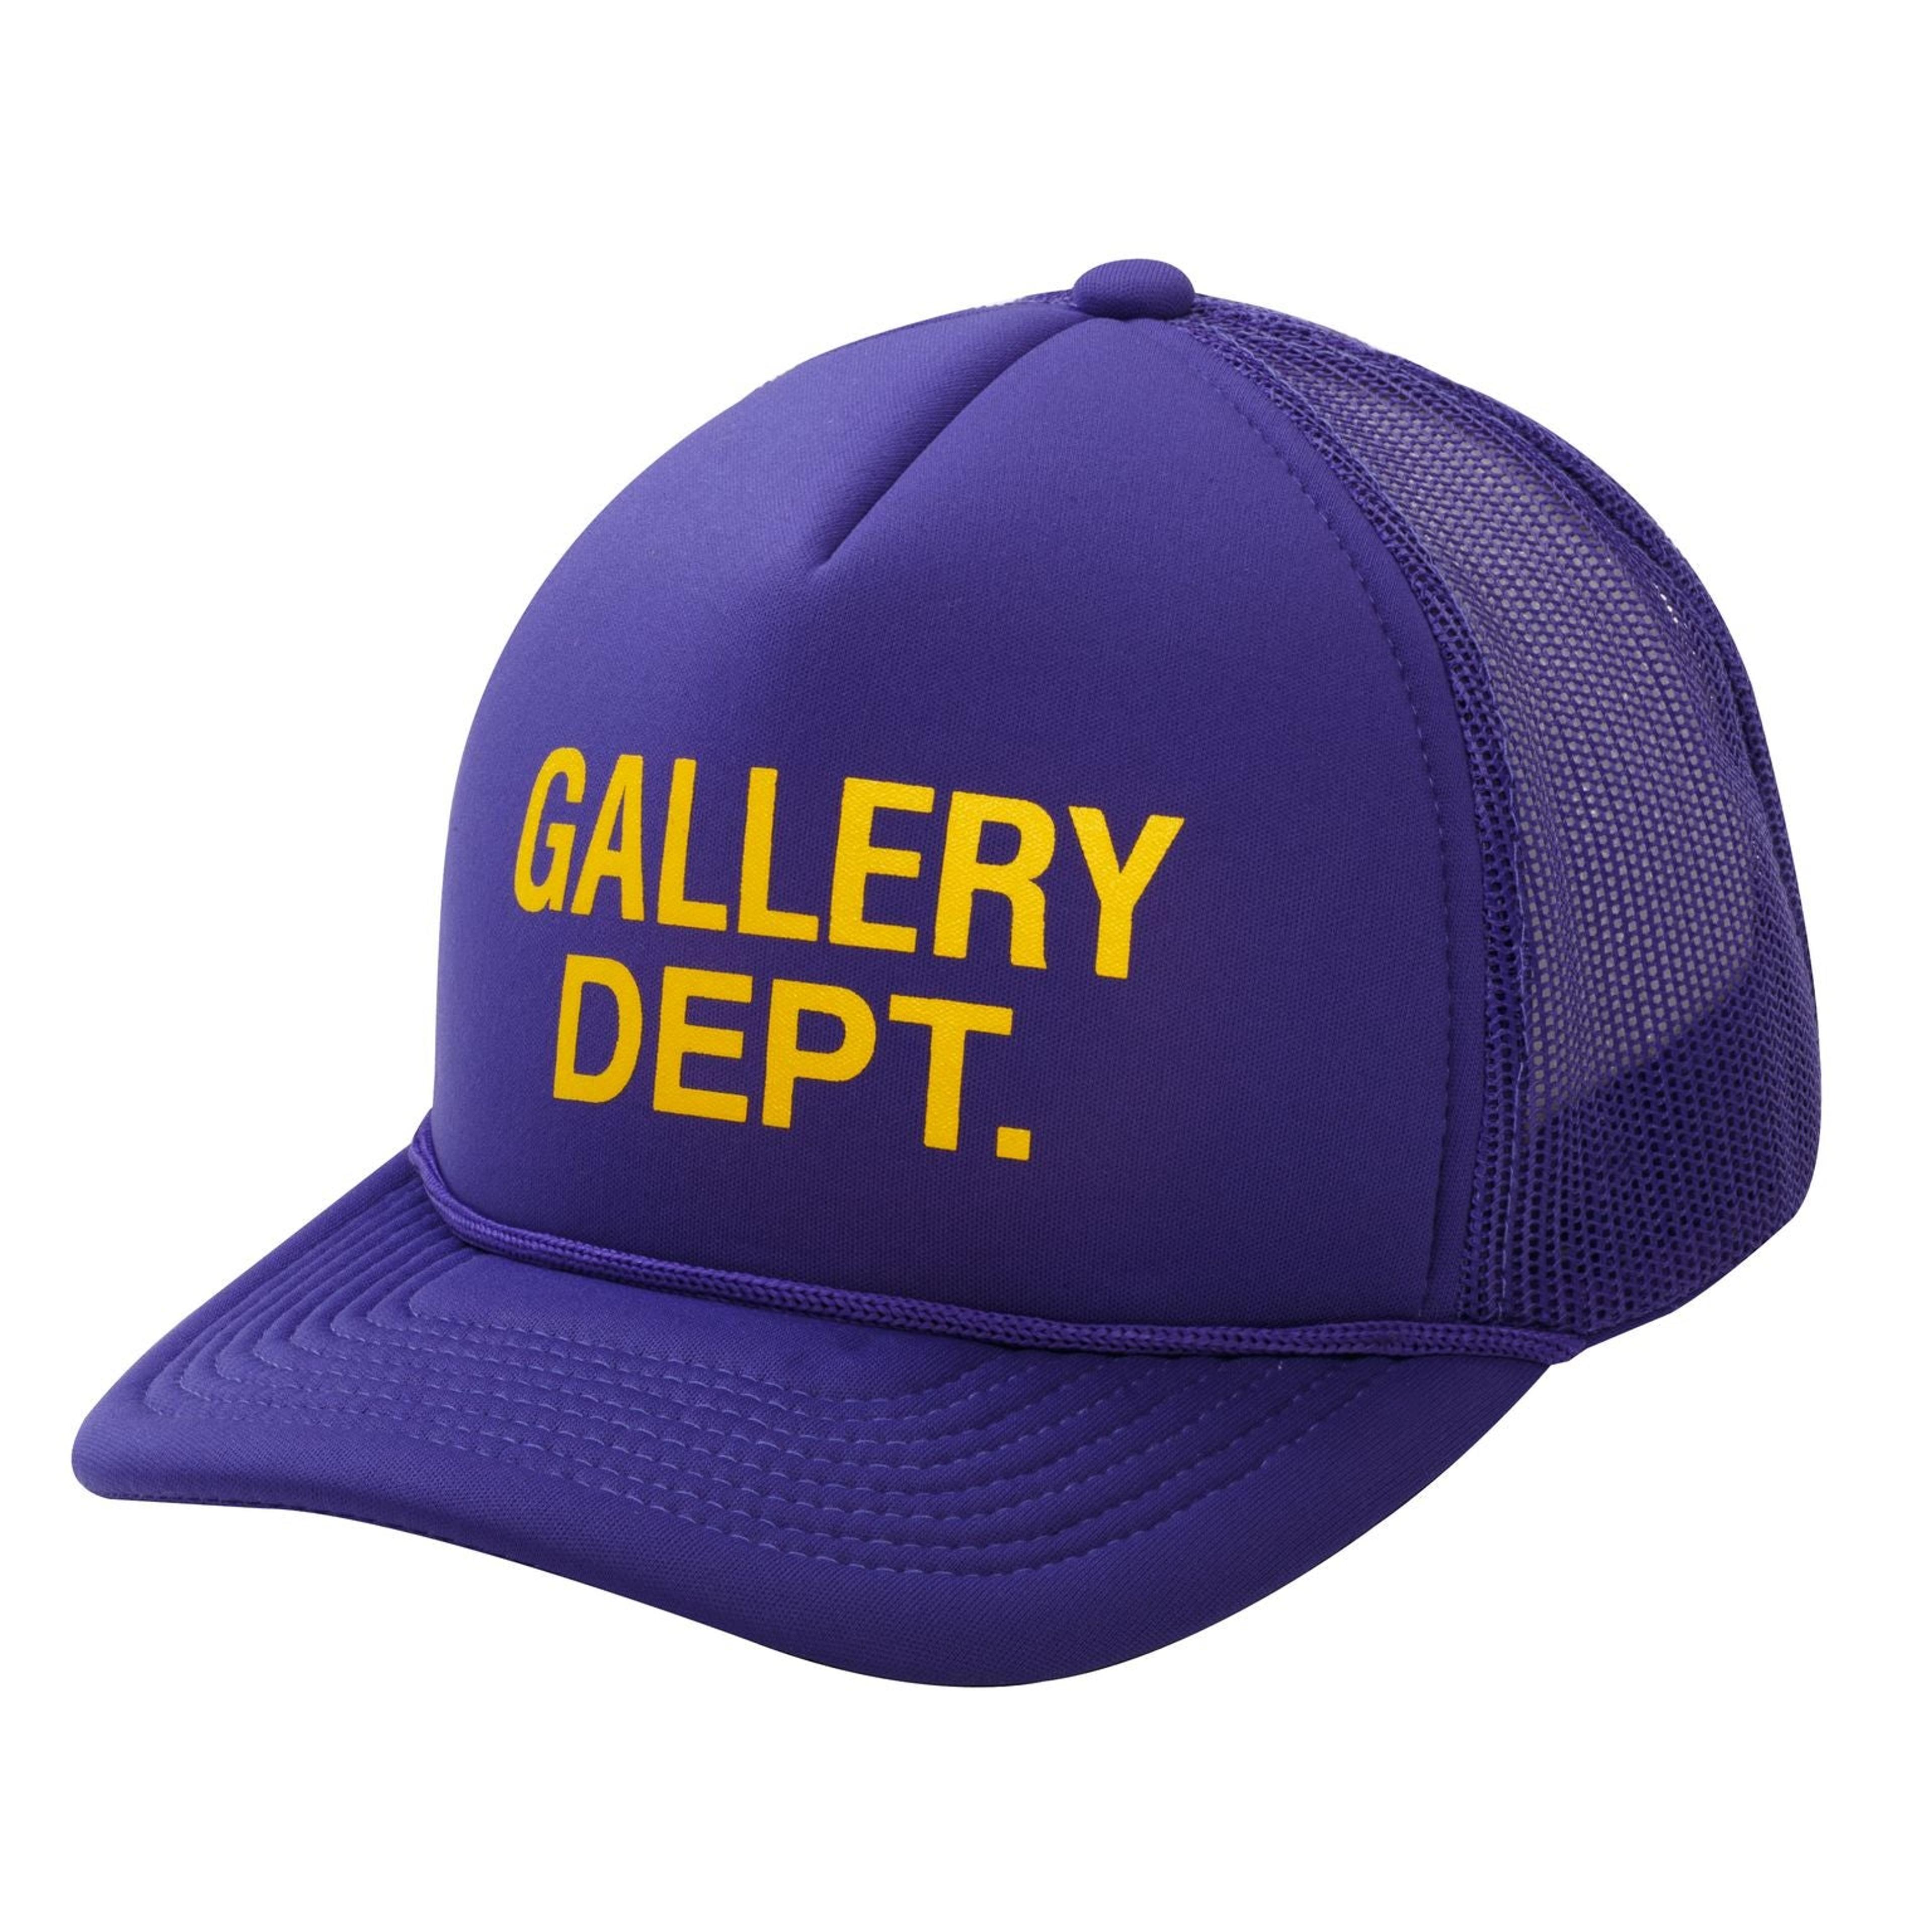 Gallery Dept. Logo Trucker Purple